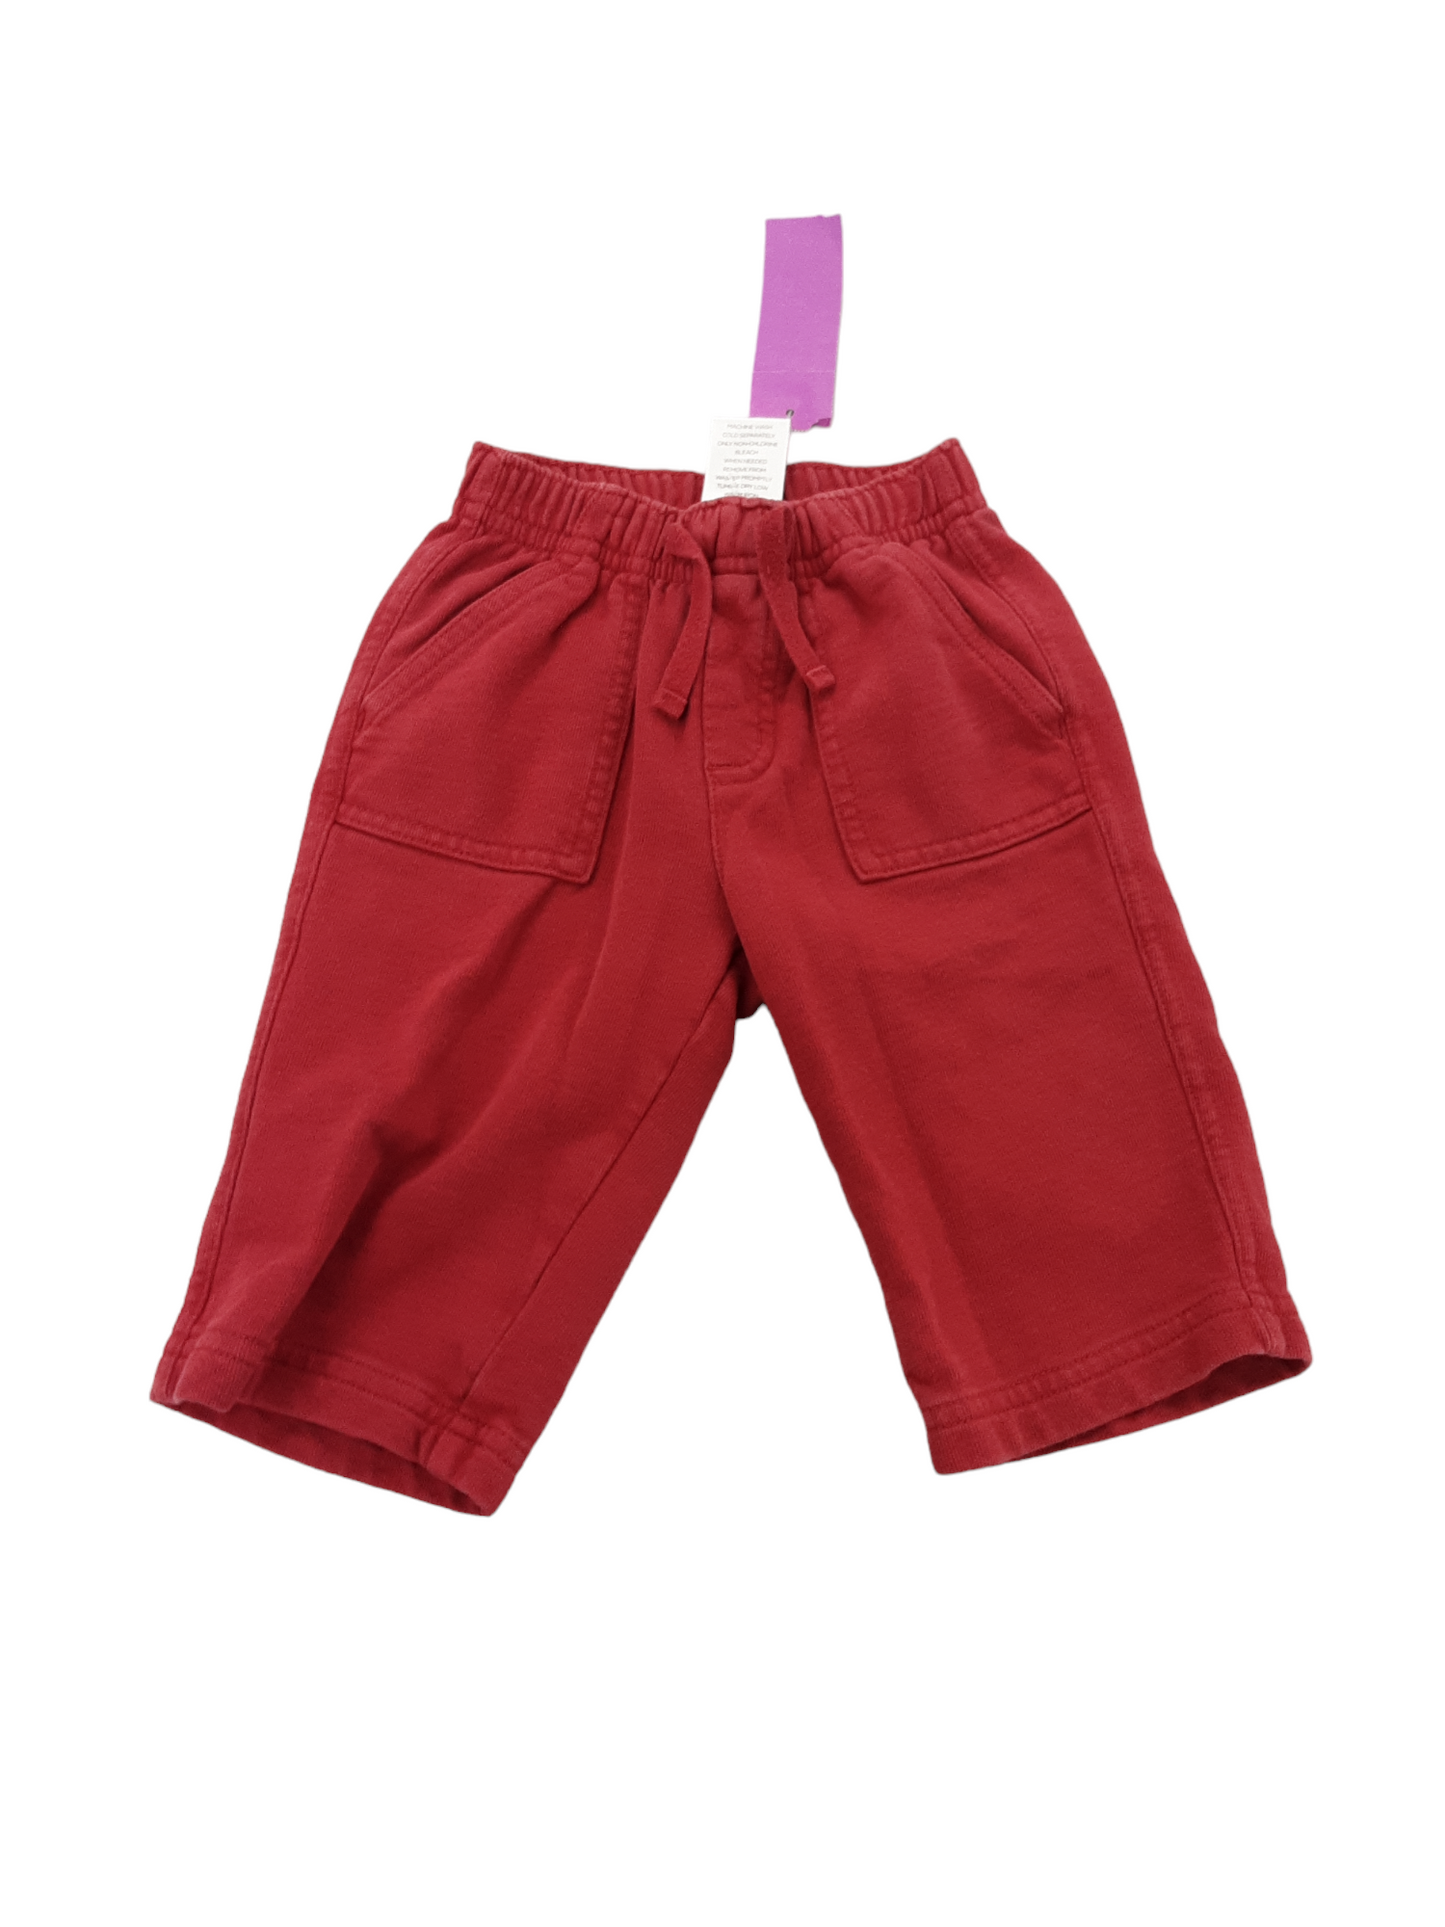 Cute red sweatpants 3-6m